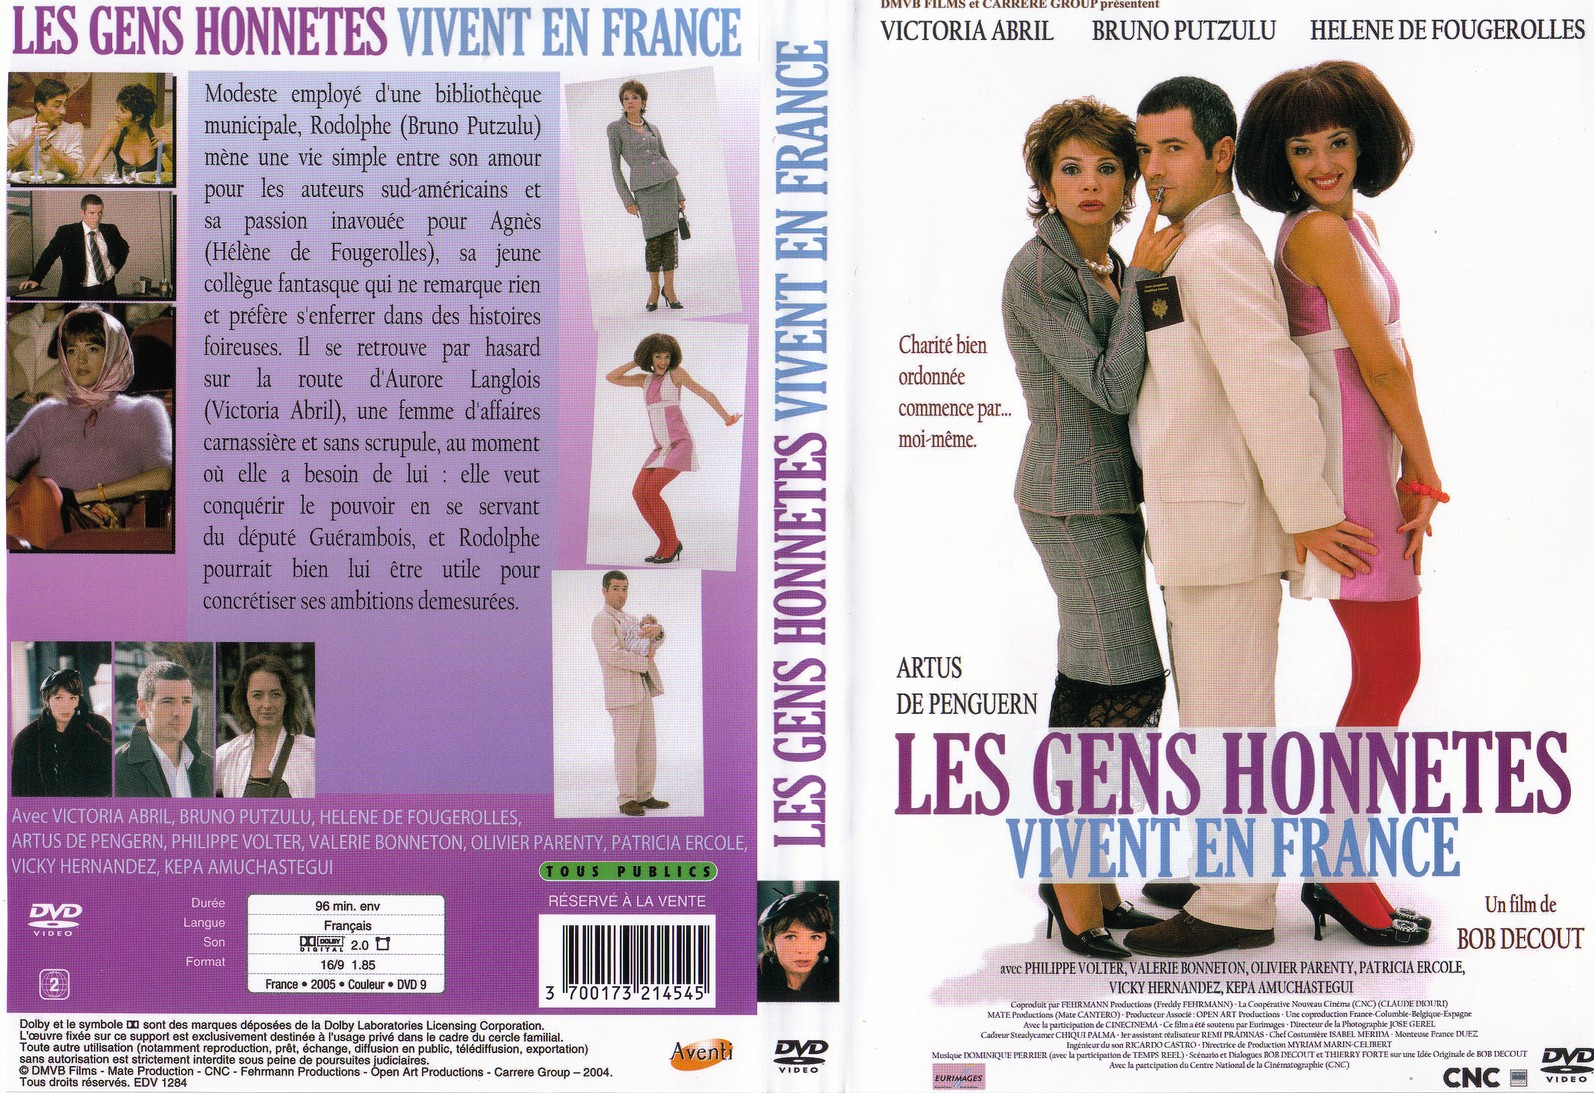 Jaquette DVD Les gens honnetes vivent en France